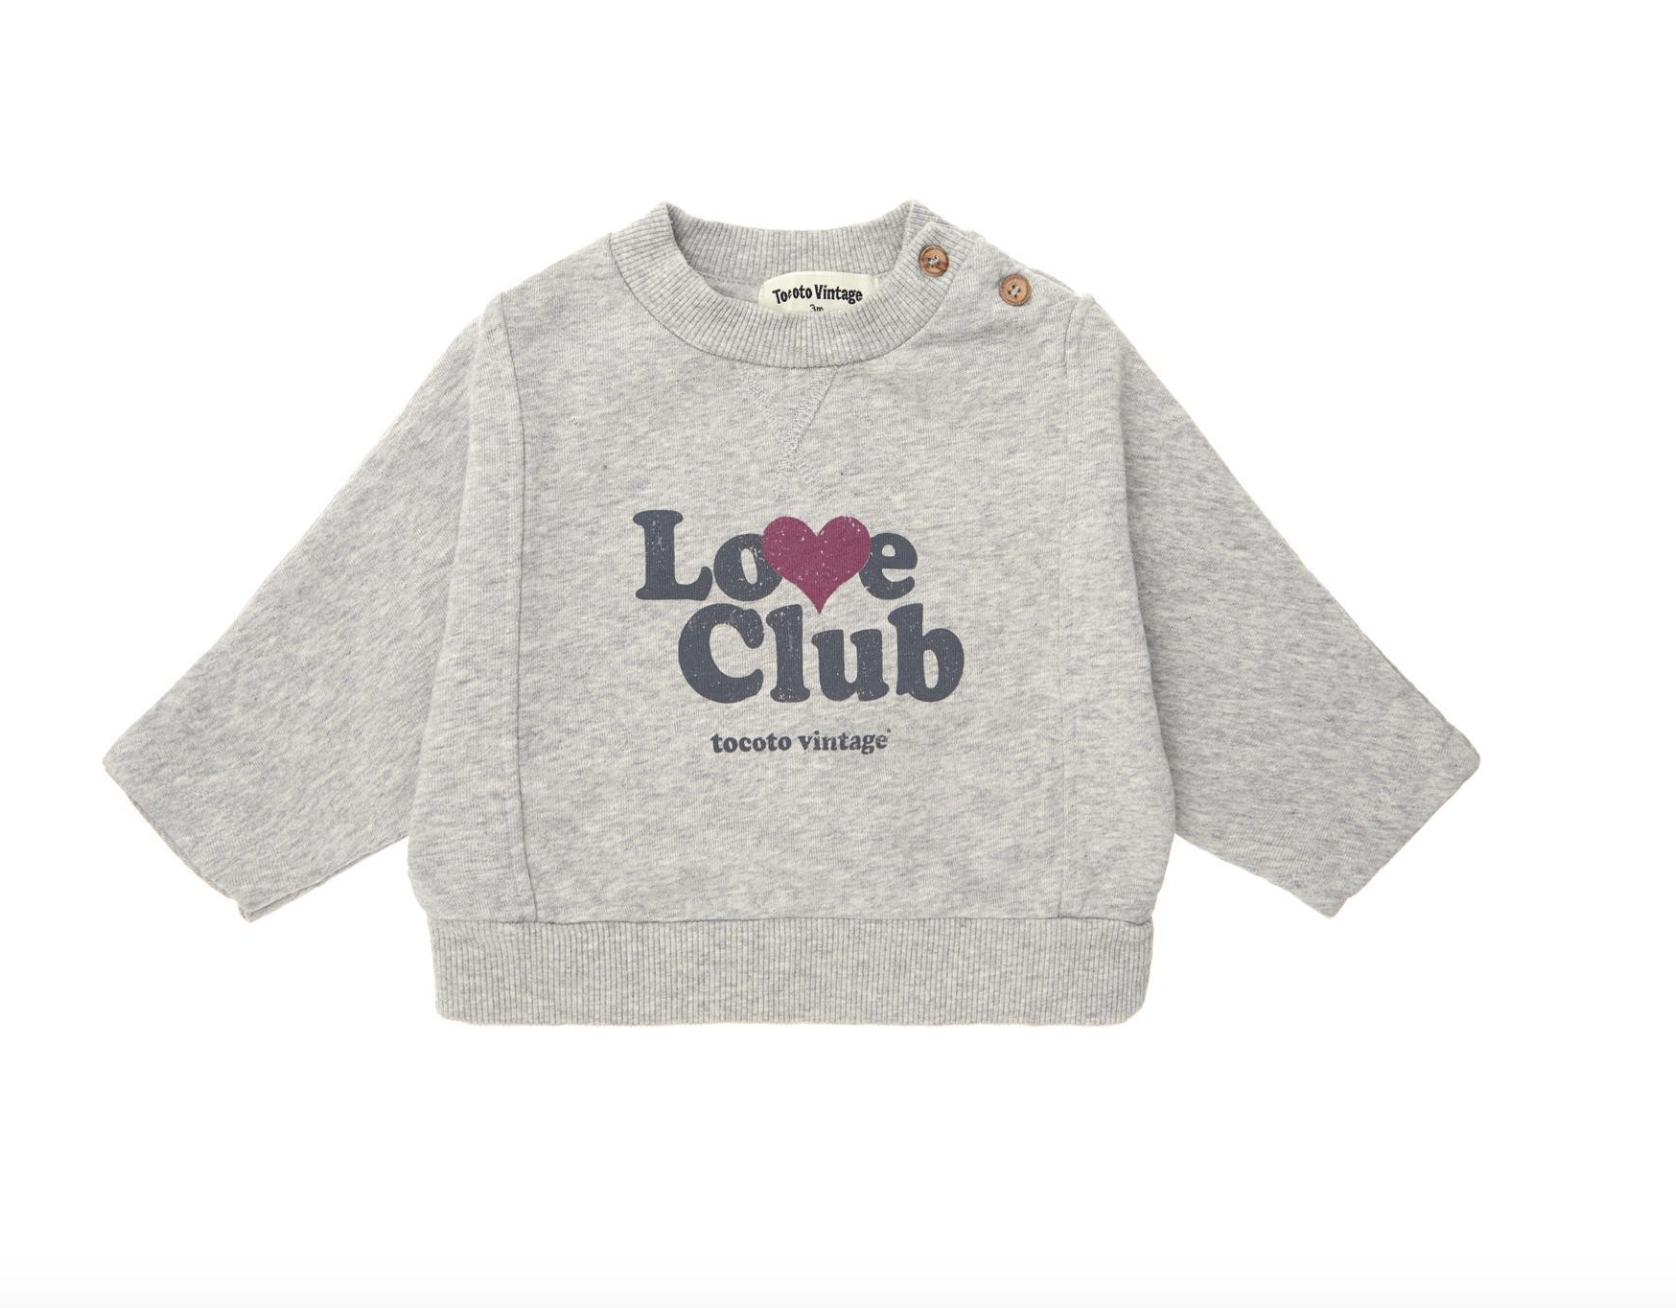 Tocoto Vintage Baby Love Club Sweatshirt